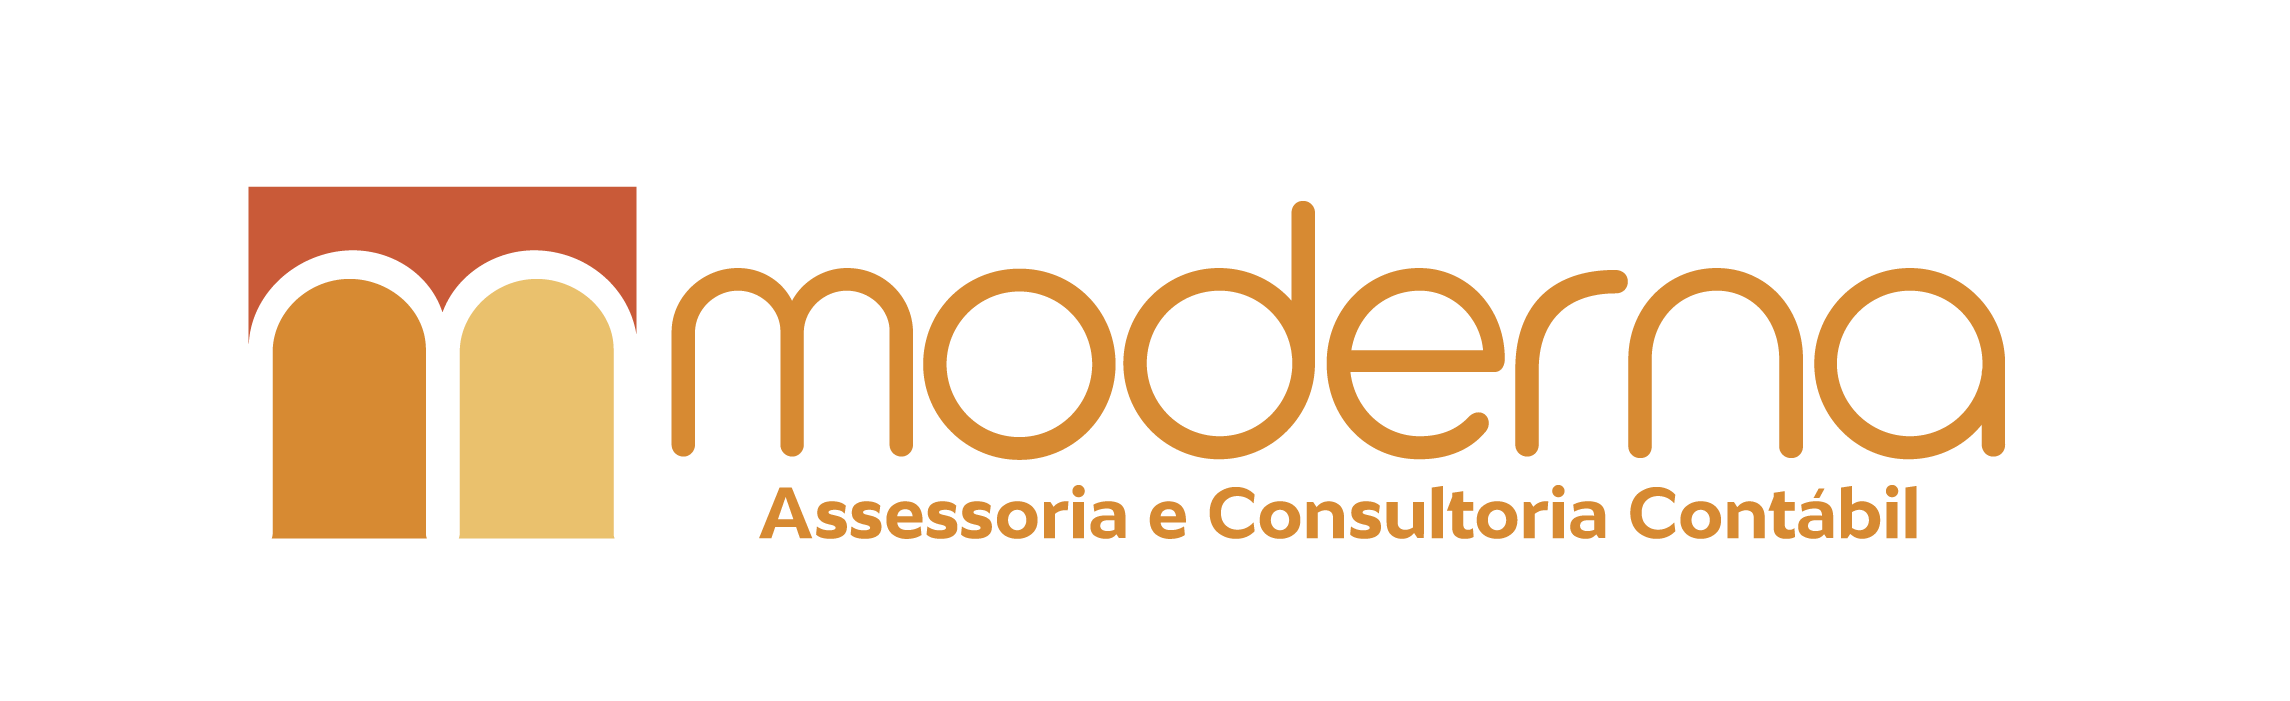 Mordena Logoo1 - Moderna Assessoria